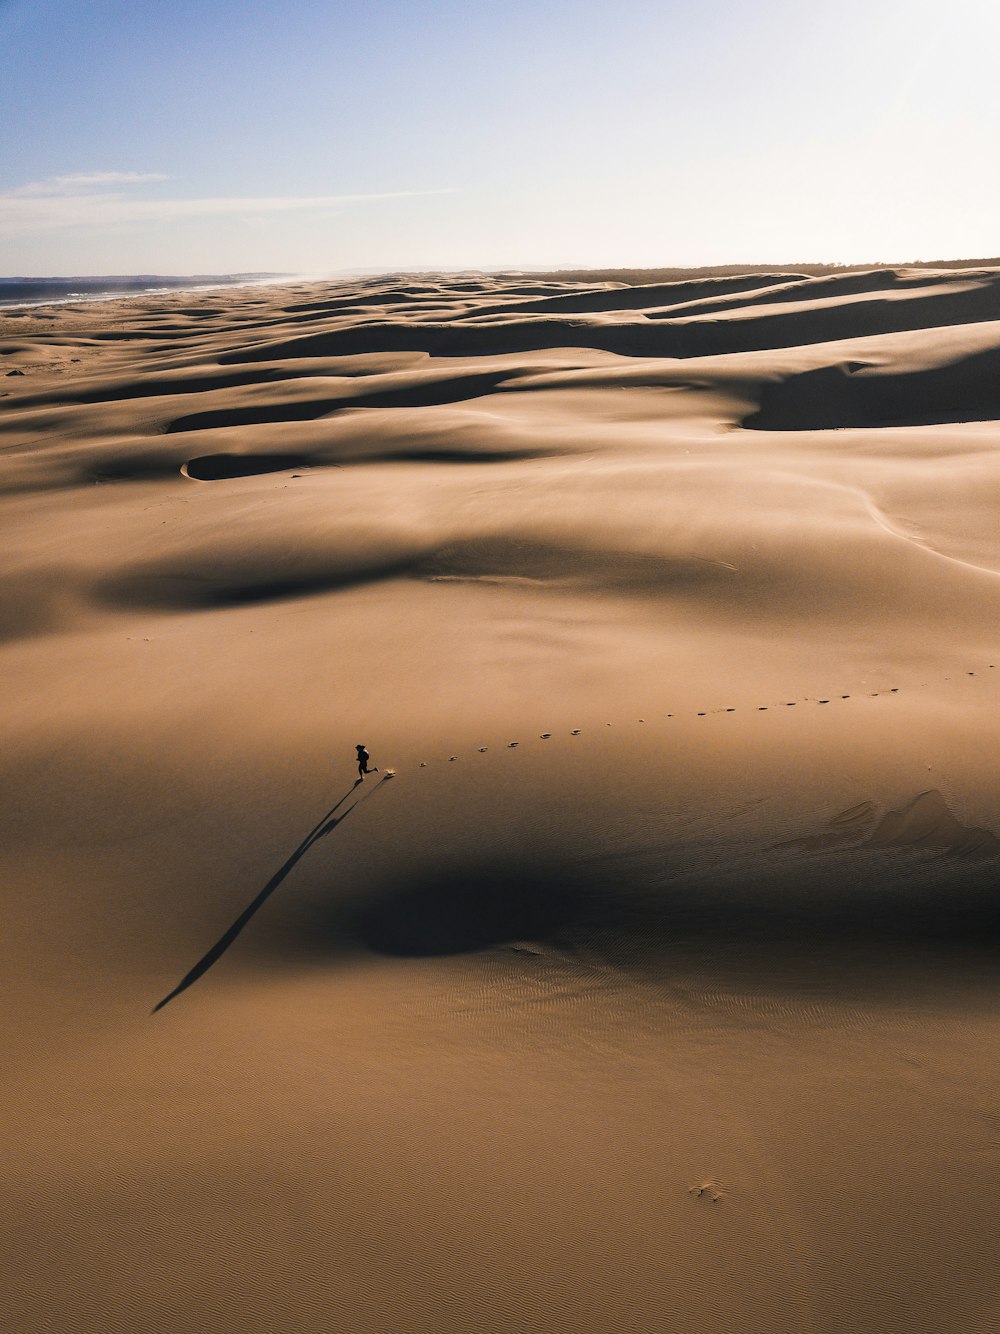 砂漠を歩く人写真